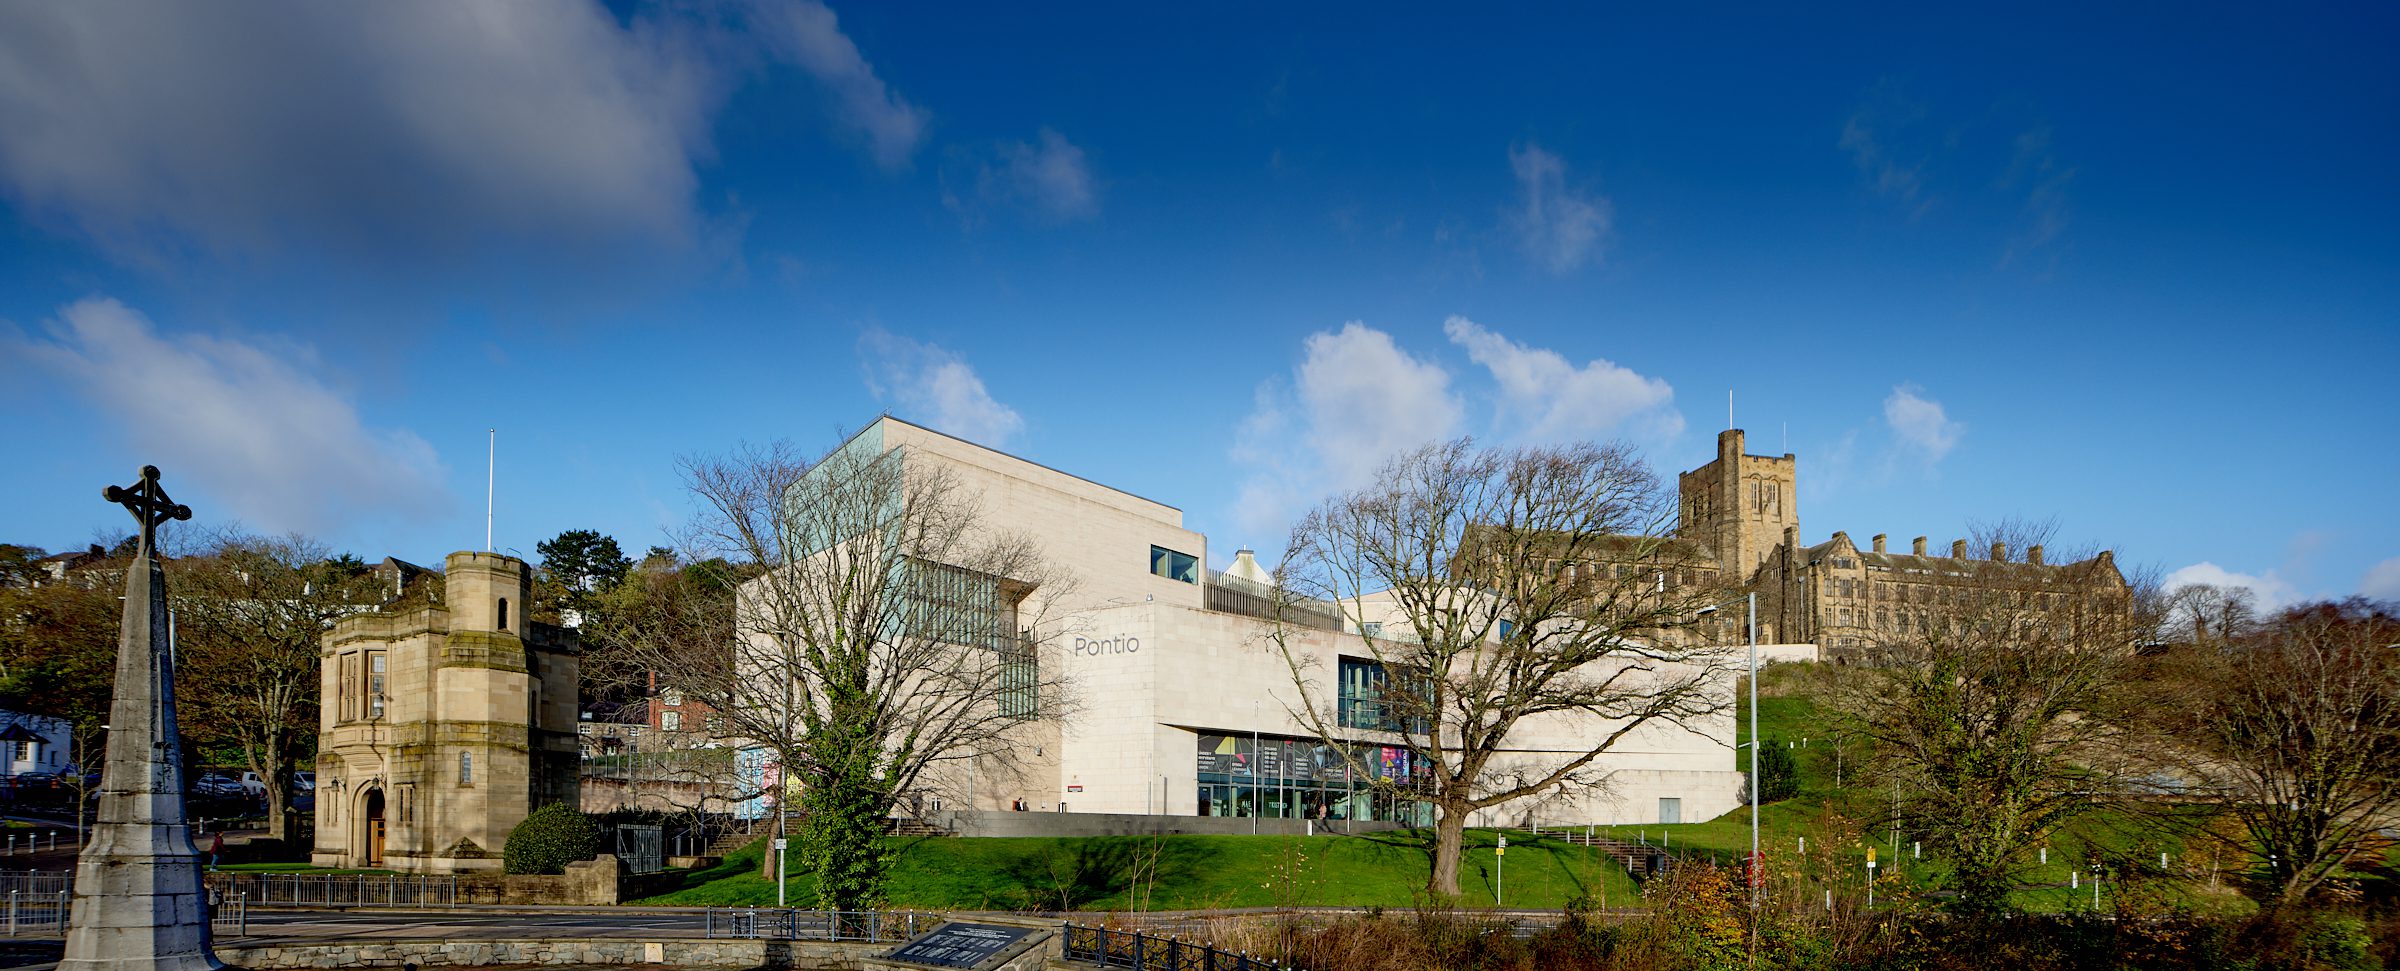 Immagine dell'Università di Bangor con le nuvole